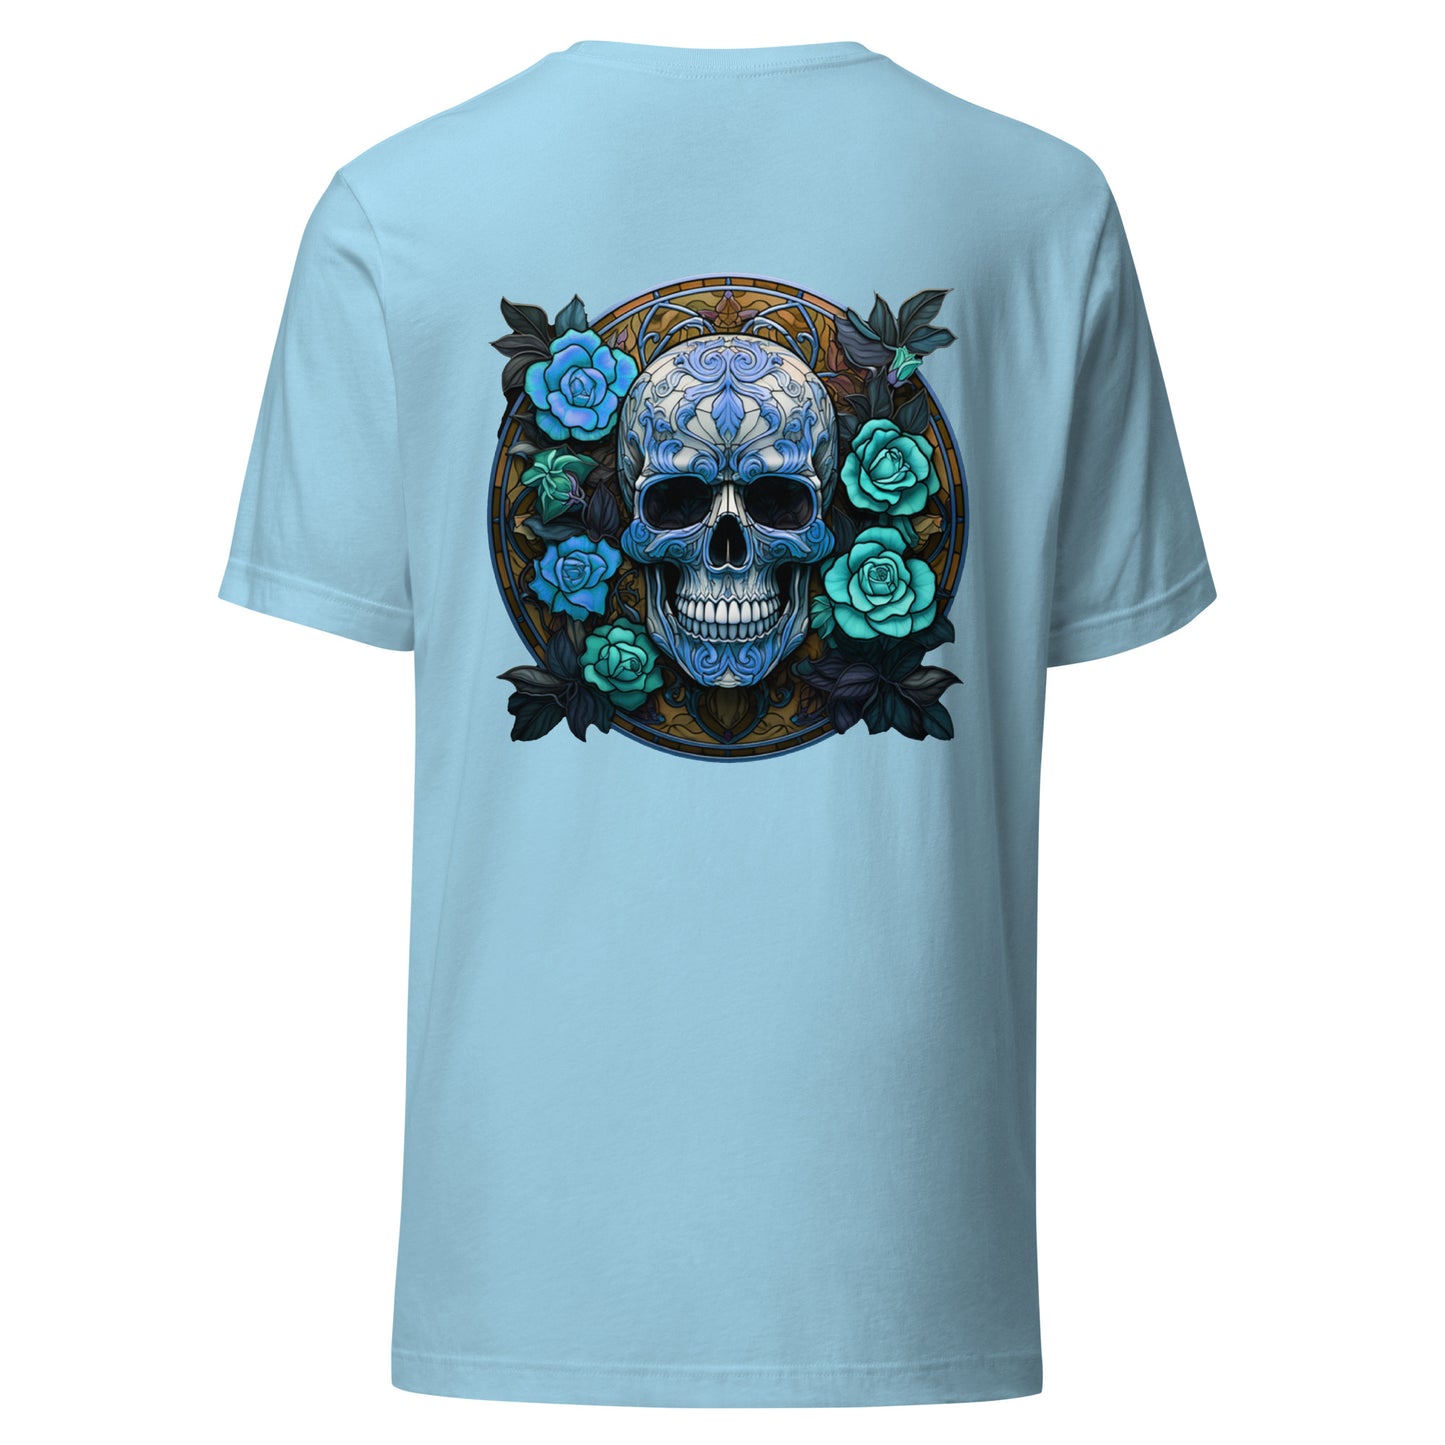 Skull & Roses t-shirt